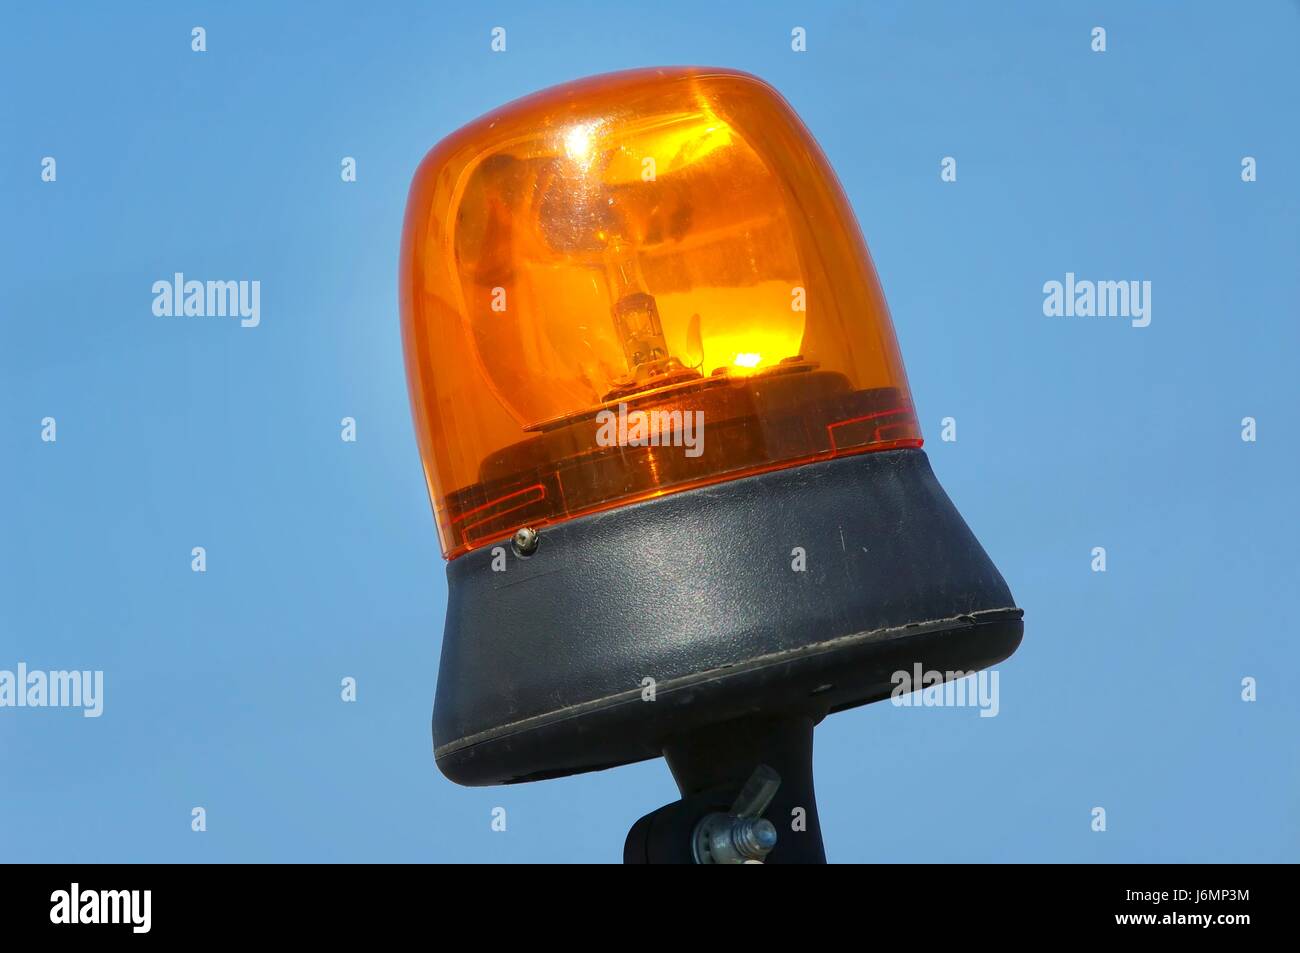 bulb lightbulb reflector warning light danger shine shines bright lucent light Stock Photo